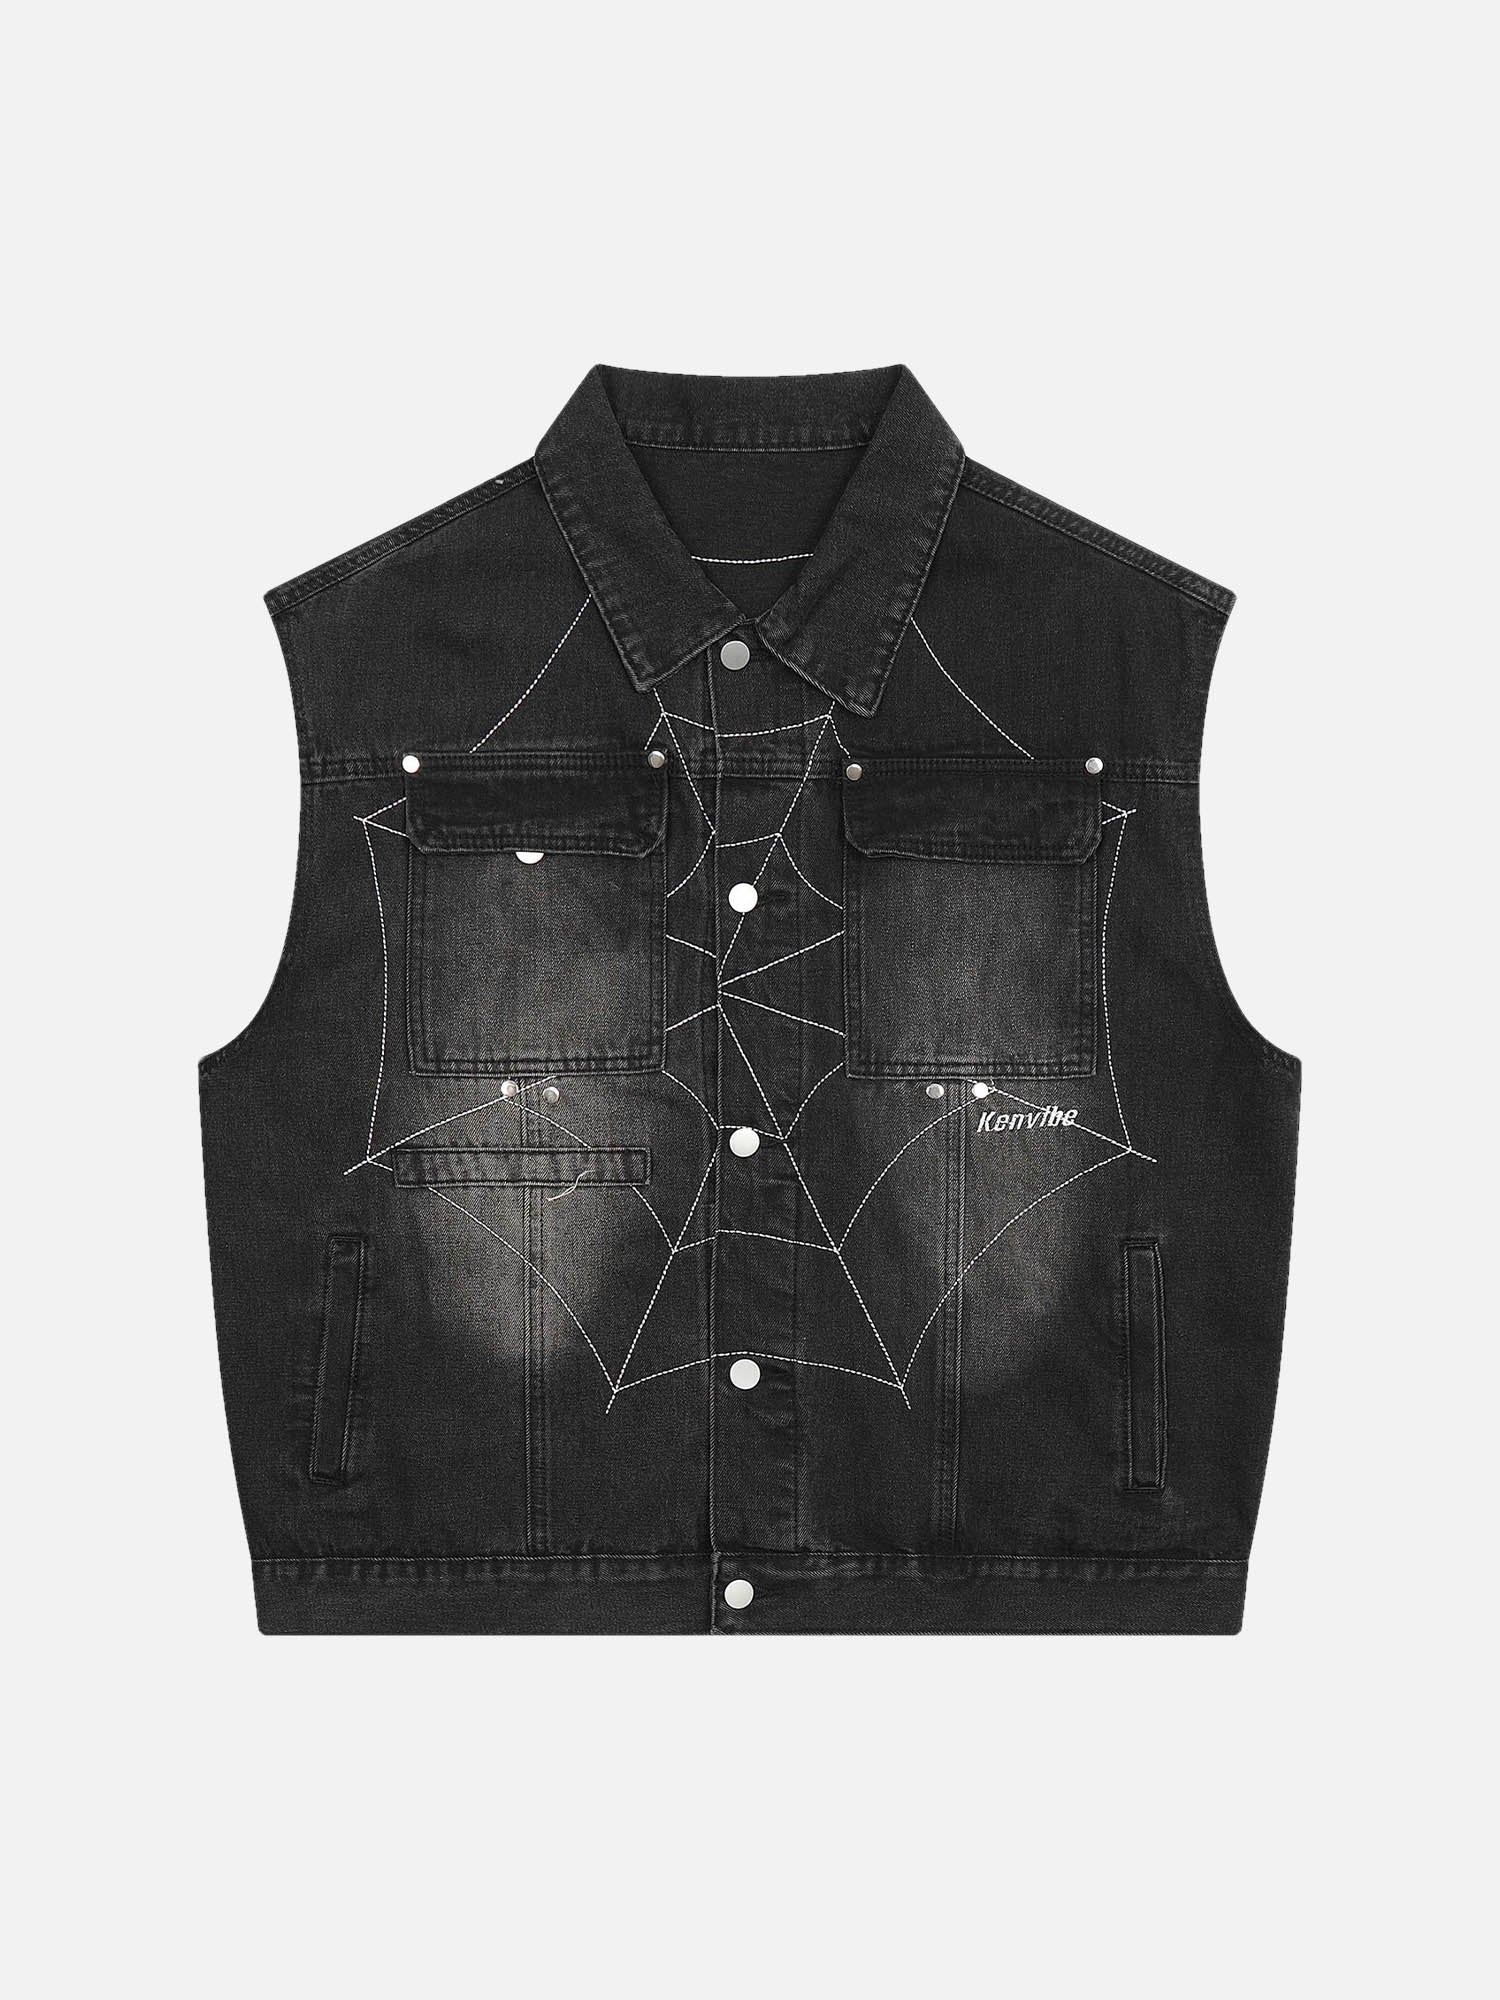 Thesupermade Dark Spider Web Letter Embroidered Denim Vest Jacket